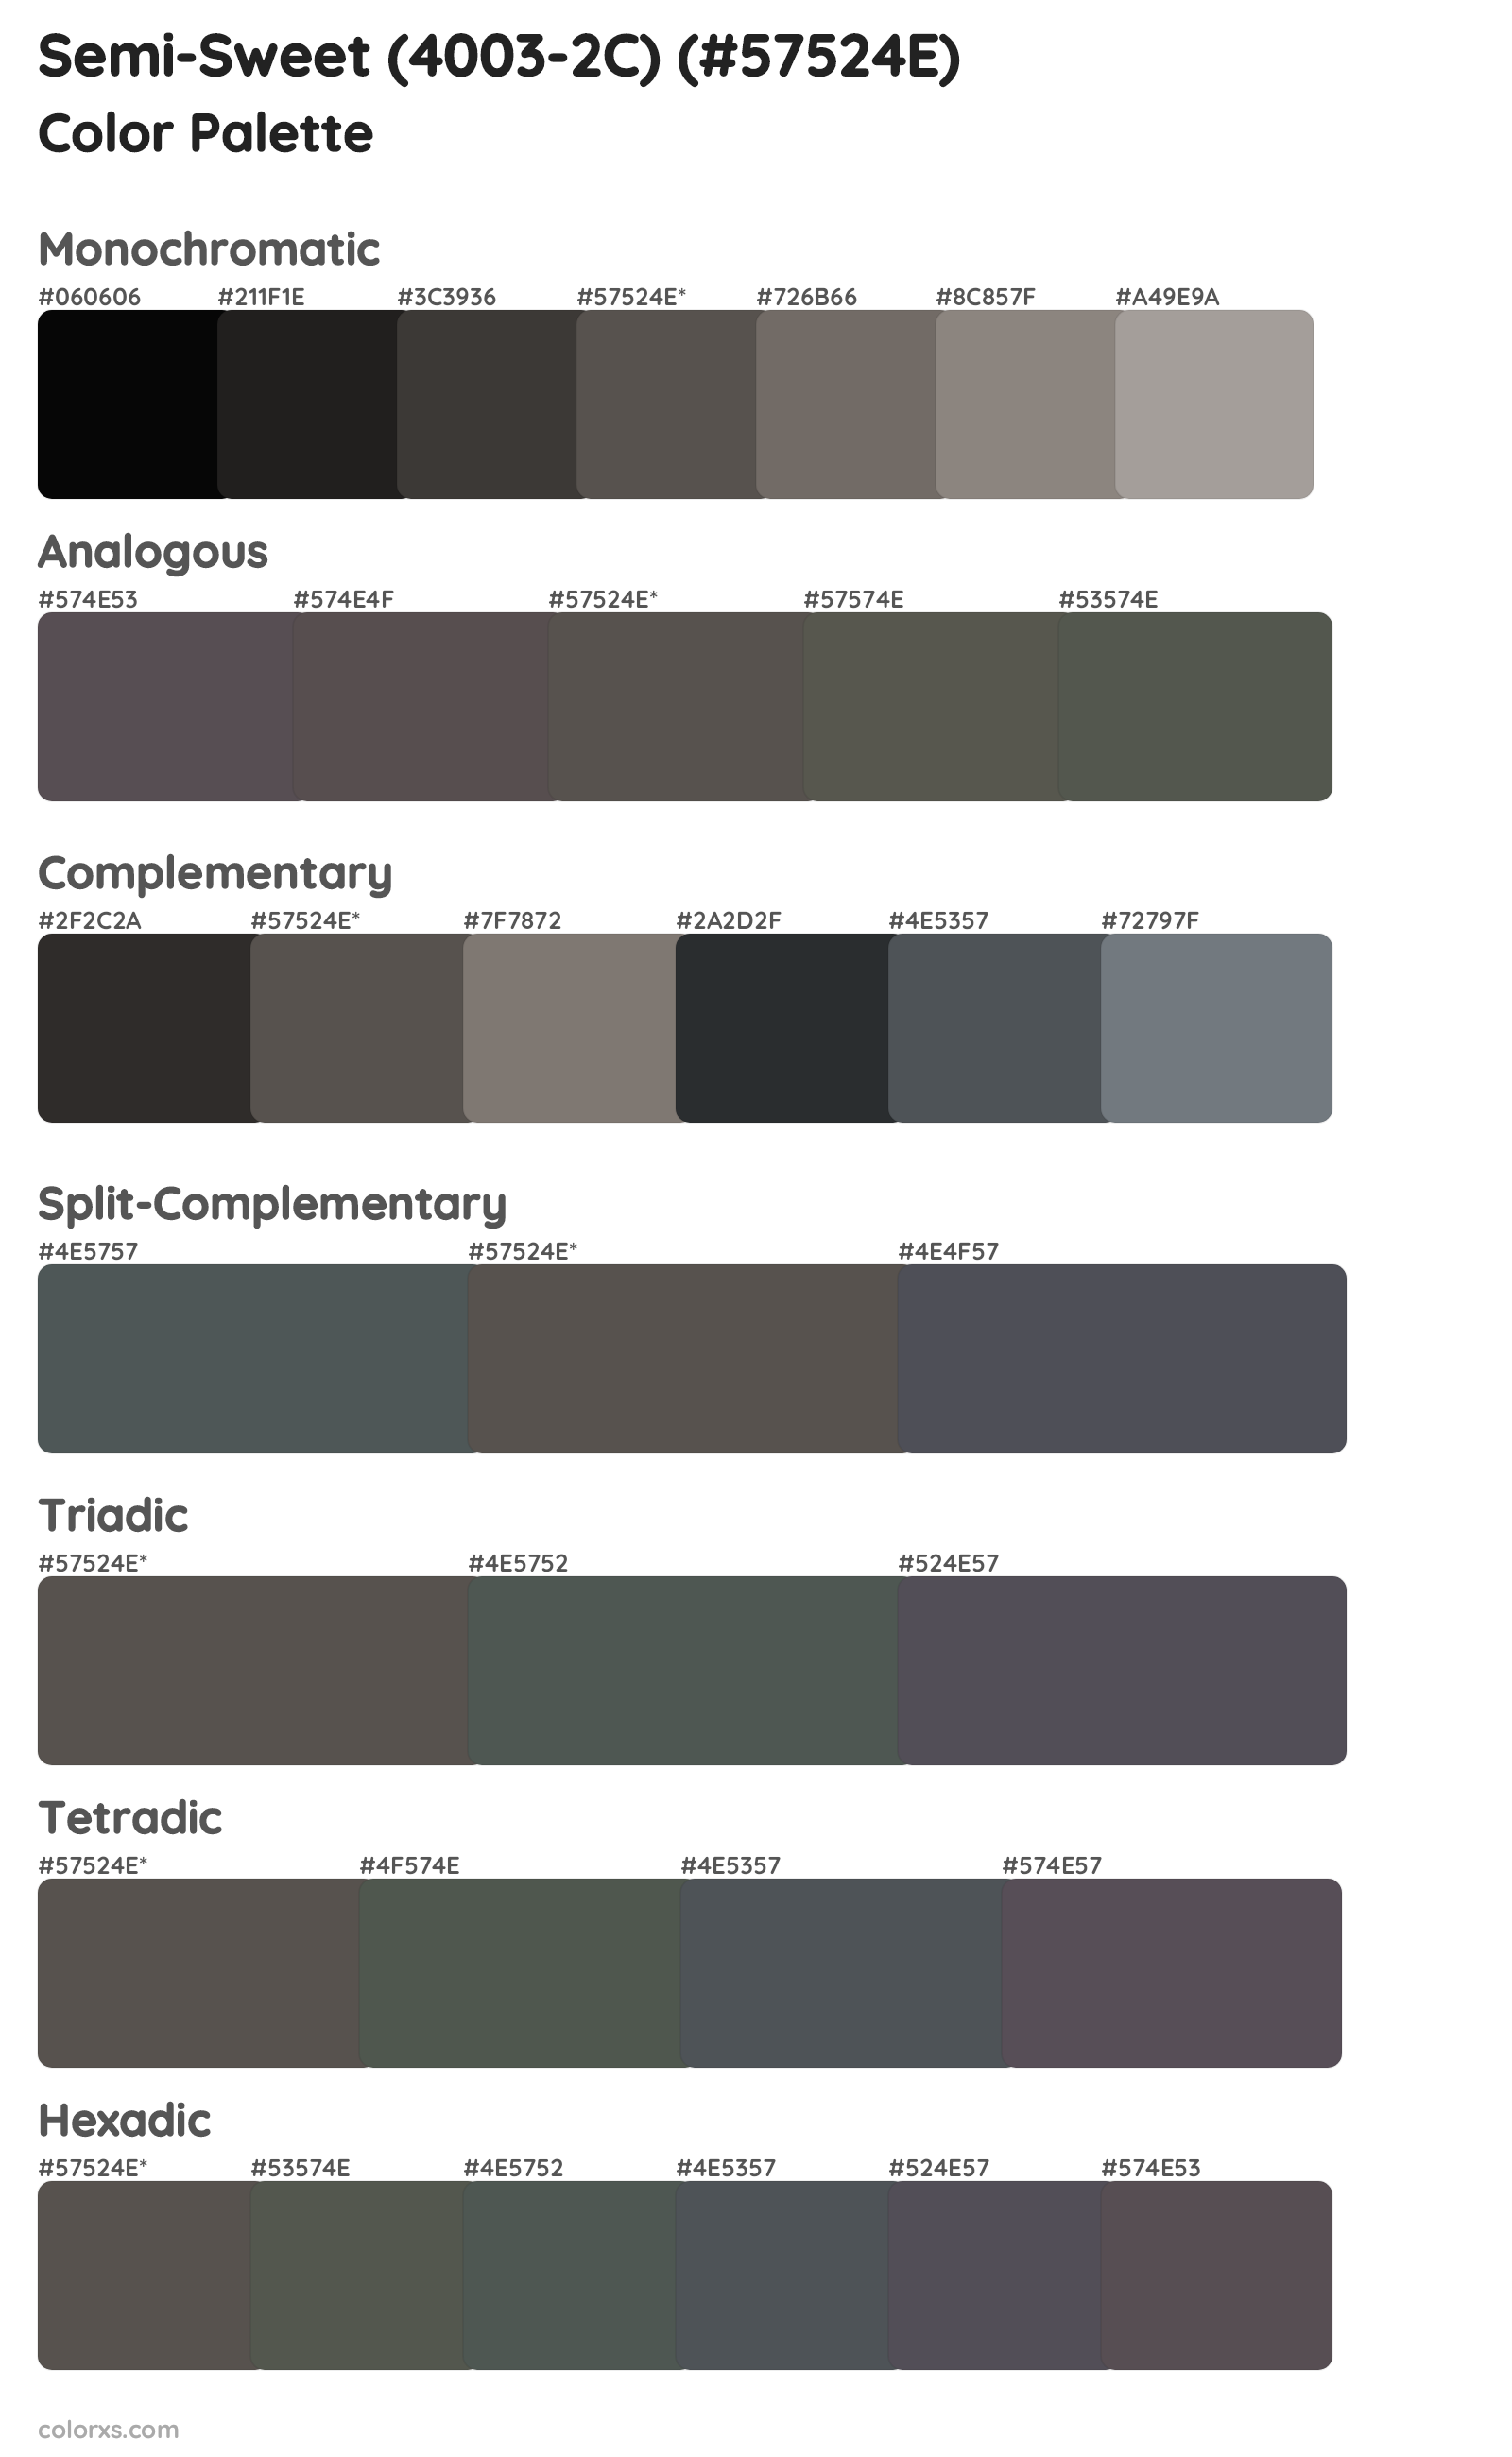 Semi-Sweet (4003-2C) Color Scheme Palettes